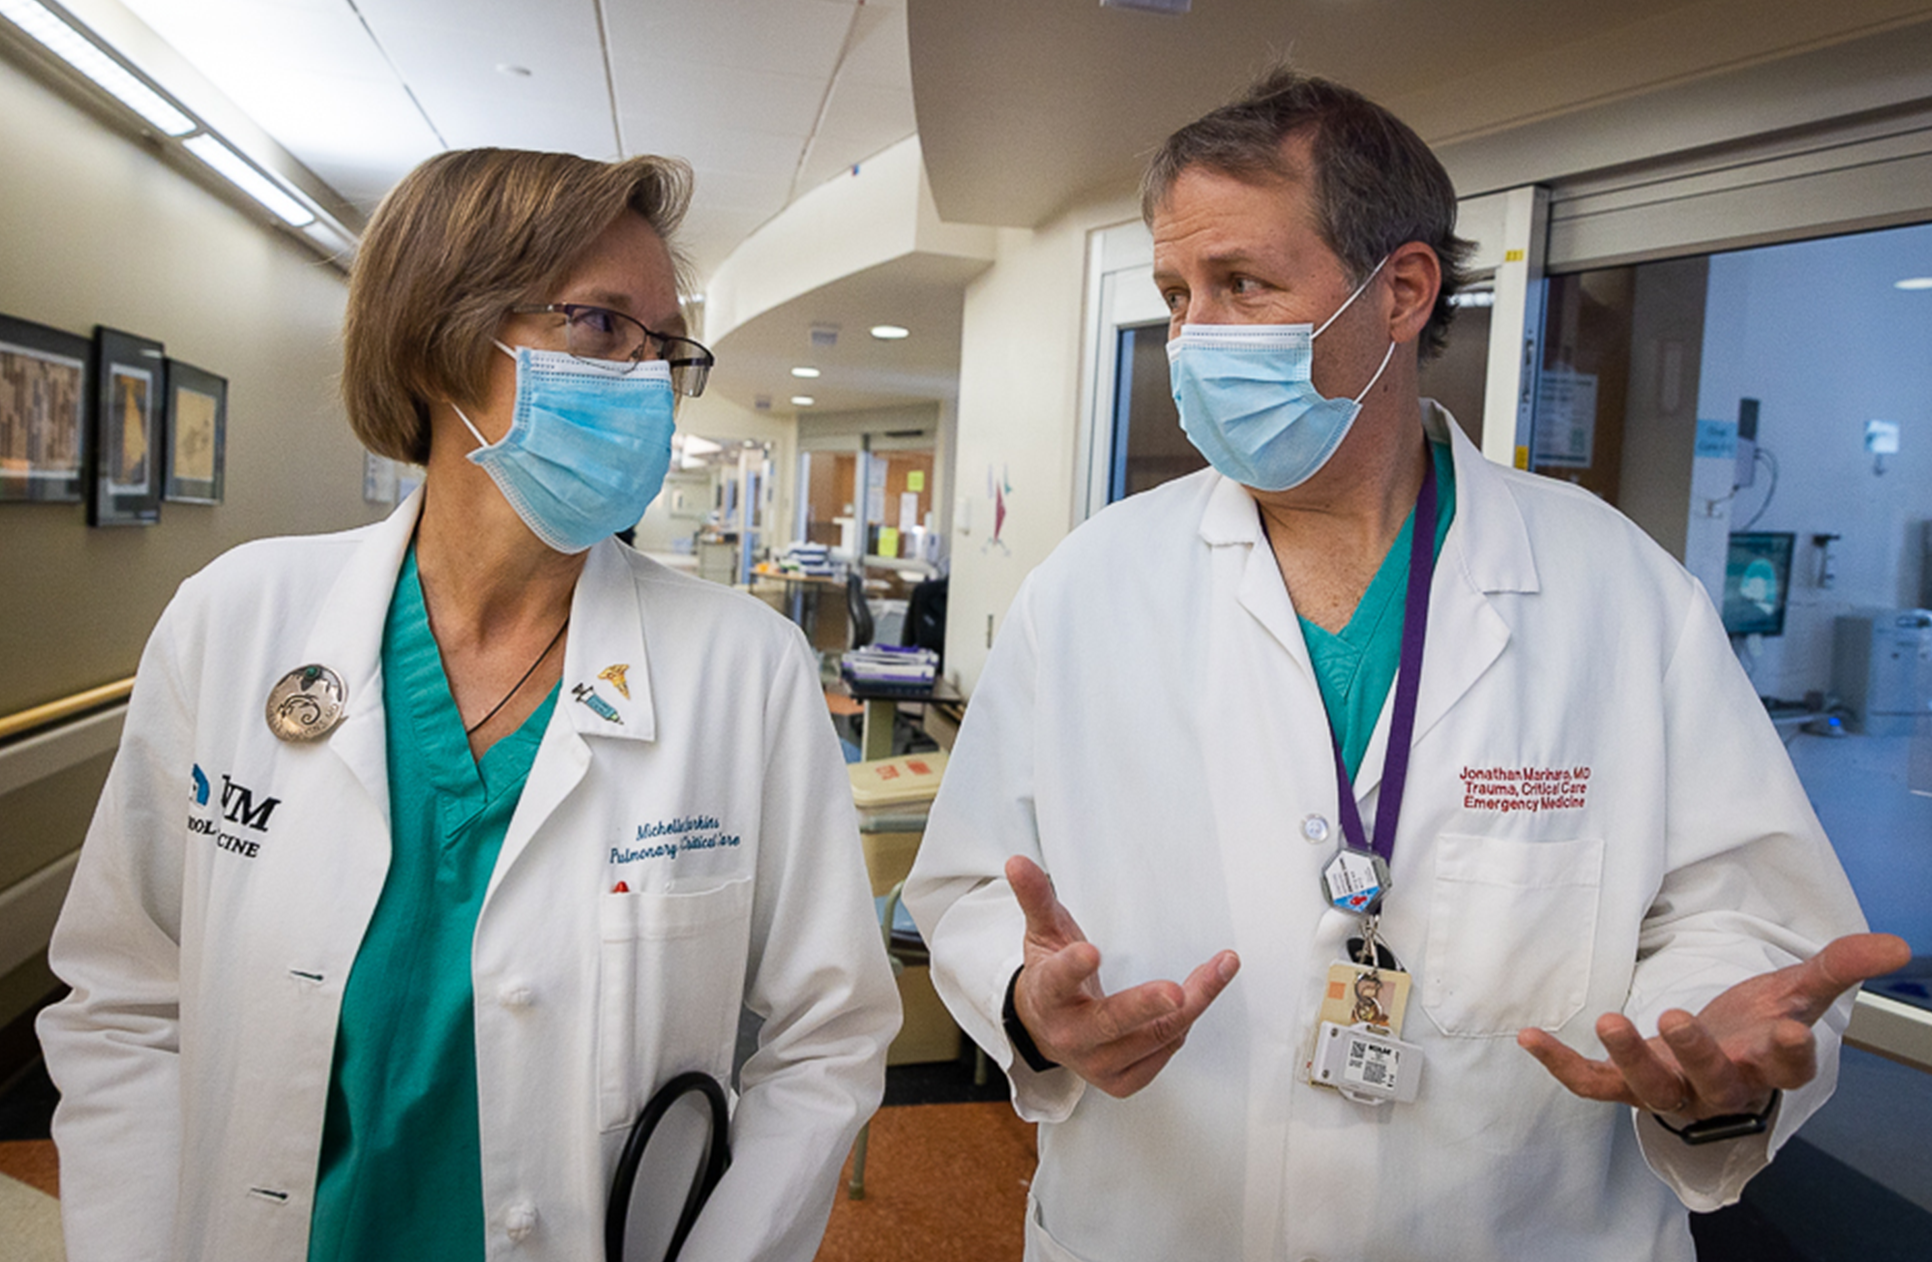 Michelle Harkins (izquierda) y Jon Marinaro (derecha) caminan por la sala de emergencias de un hospital